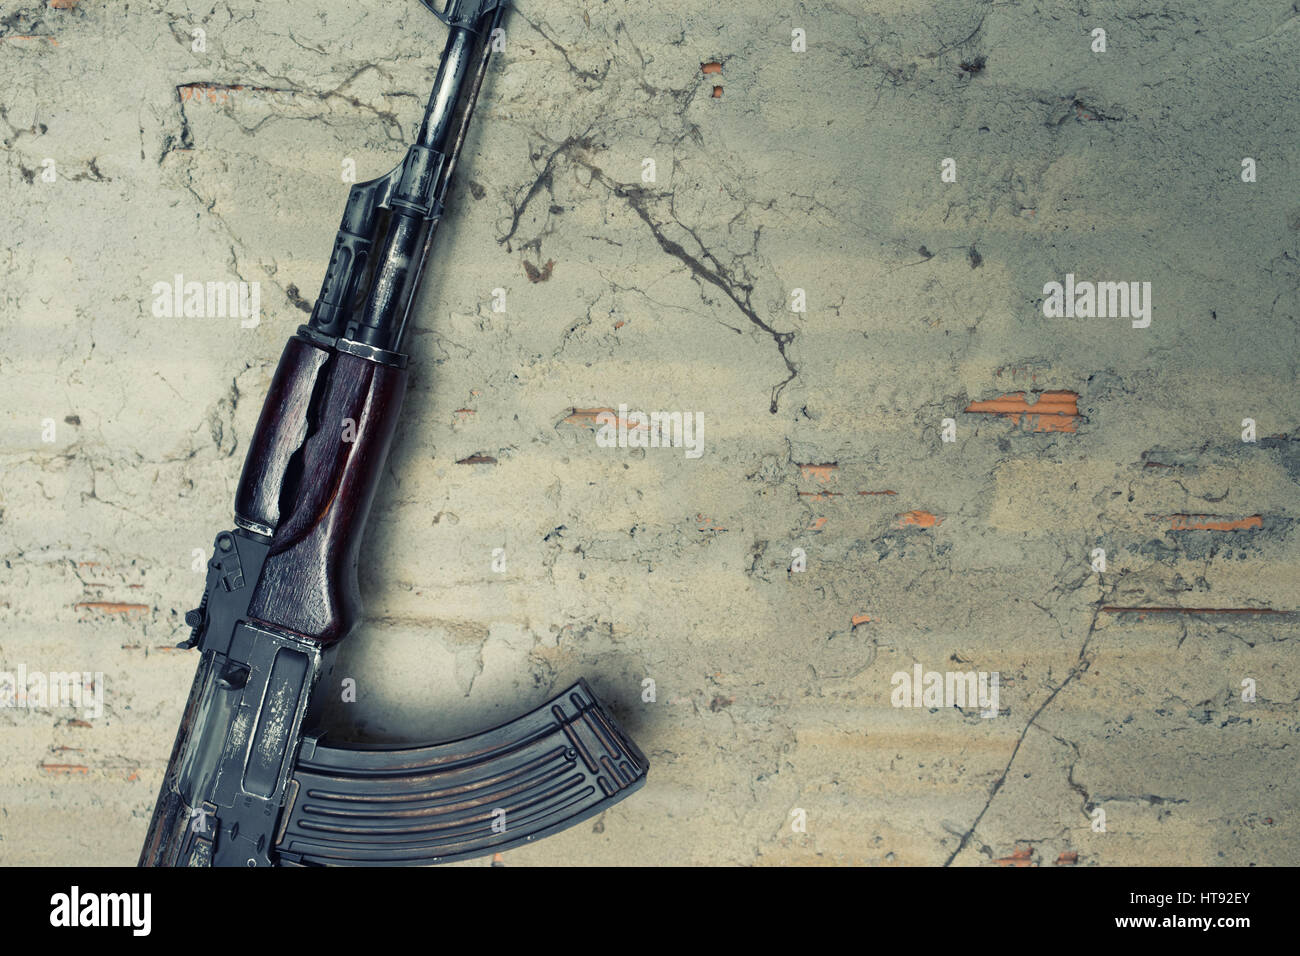 Vieille kalashnikov mitraillette AK-47 contre le mur Banque D'Images